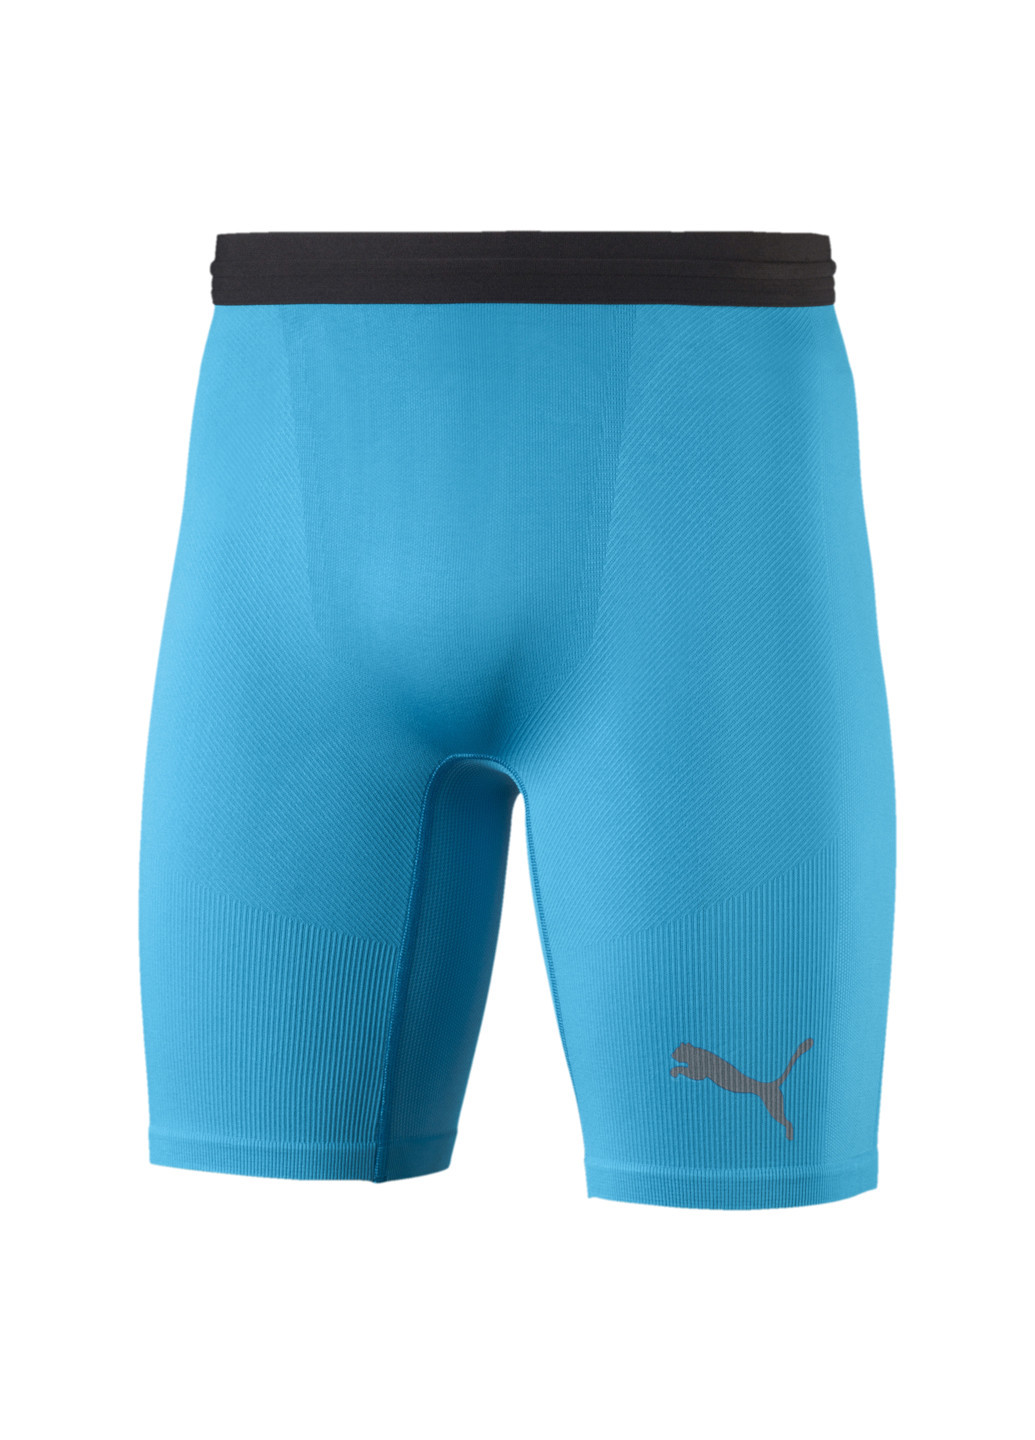 Футбольні лосини Football Bodywear Men’s Baselayer Short Tights Puma однотонні сині спортивні нейлон, поліестер, еластан